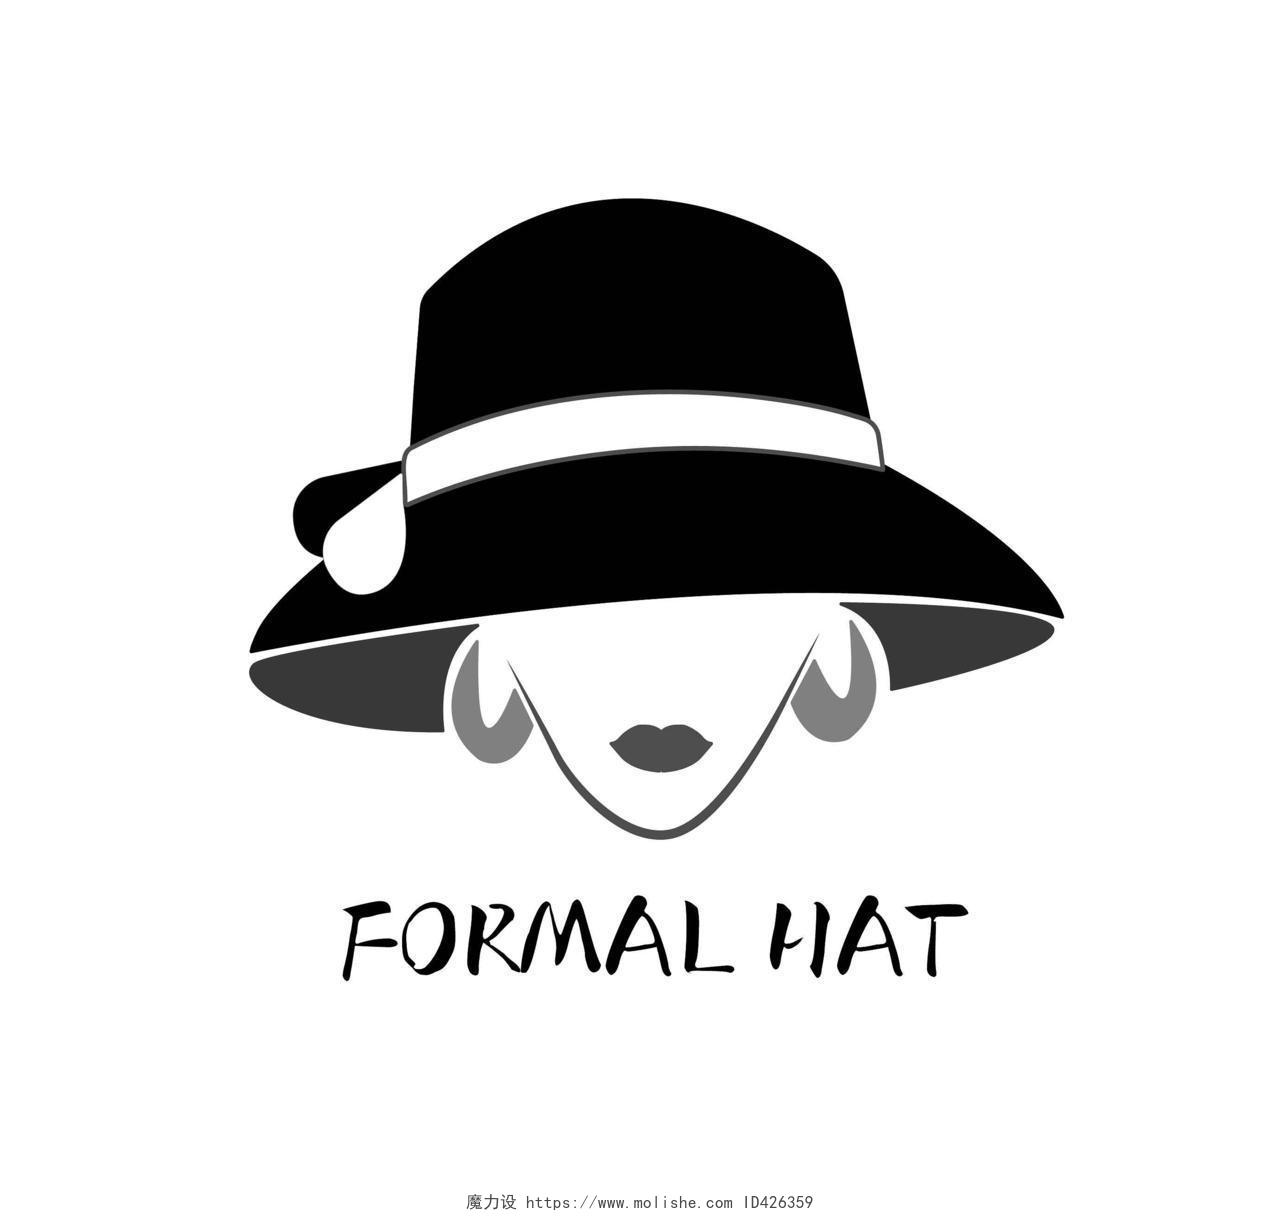 黑白色时尚简约风logo设计帽子店logo